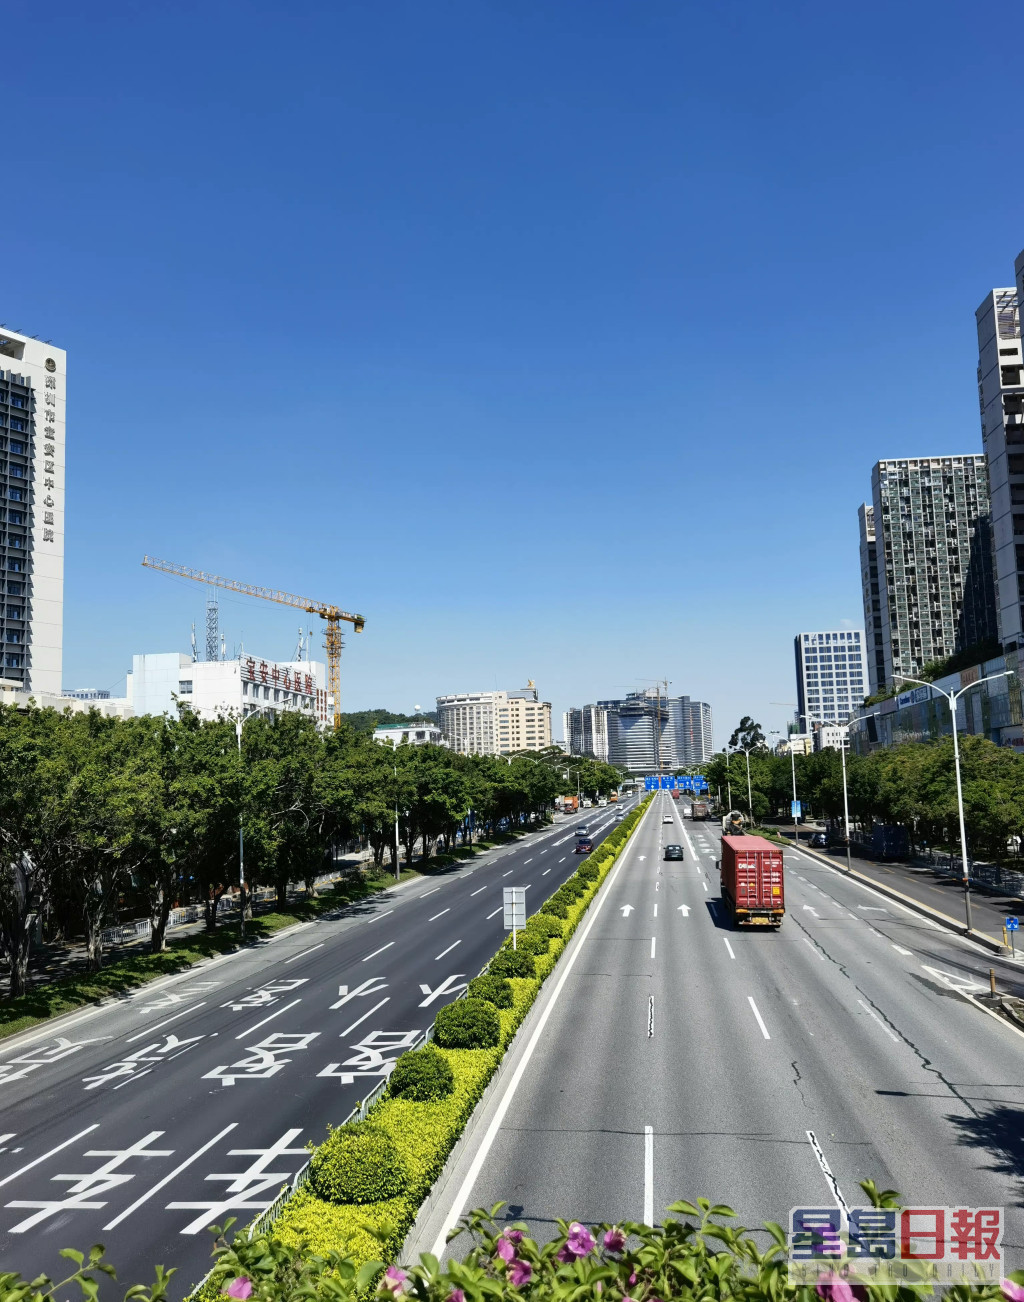 深圳市区马路只有少数车行走，网上图片